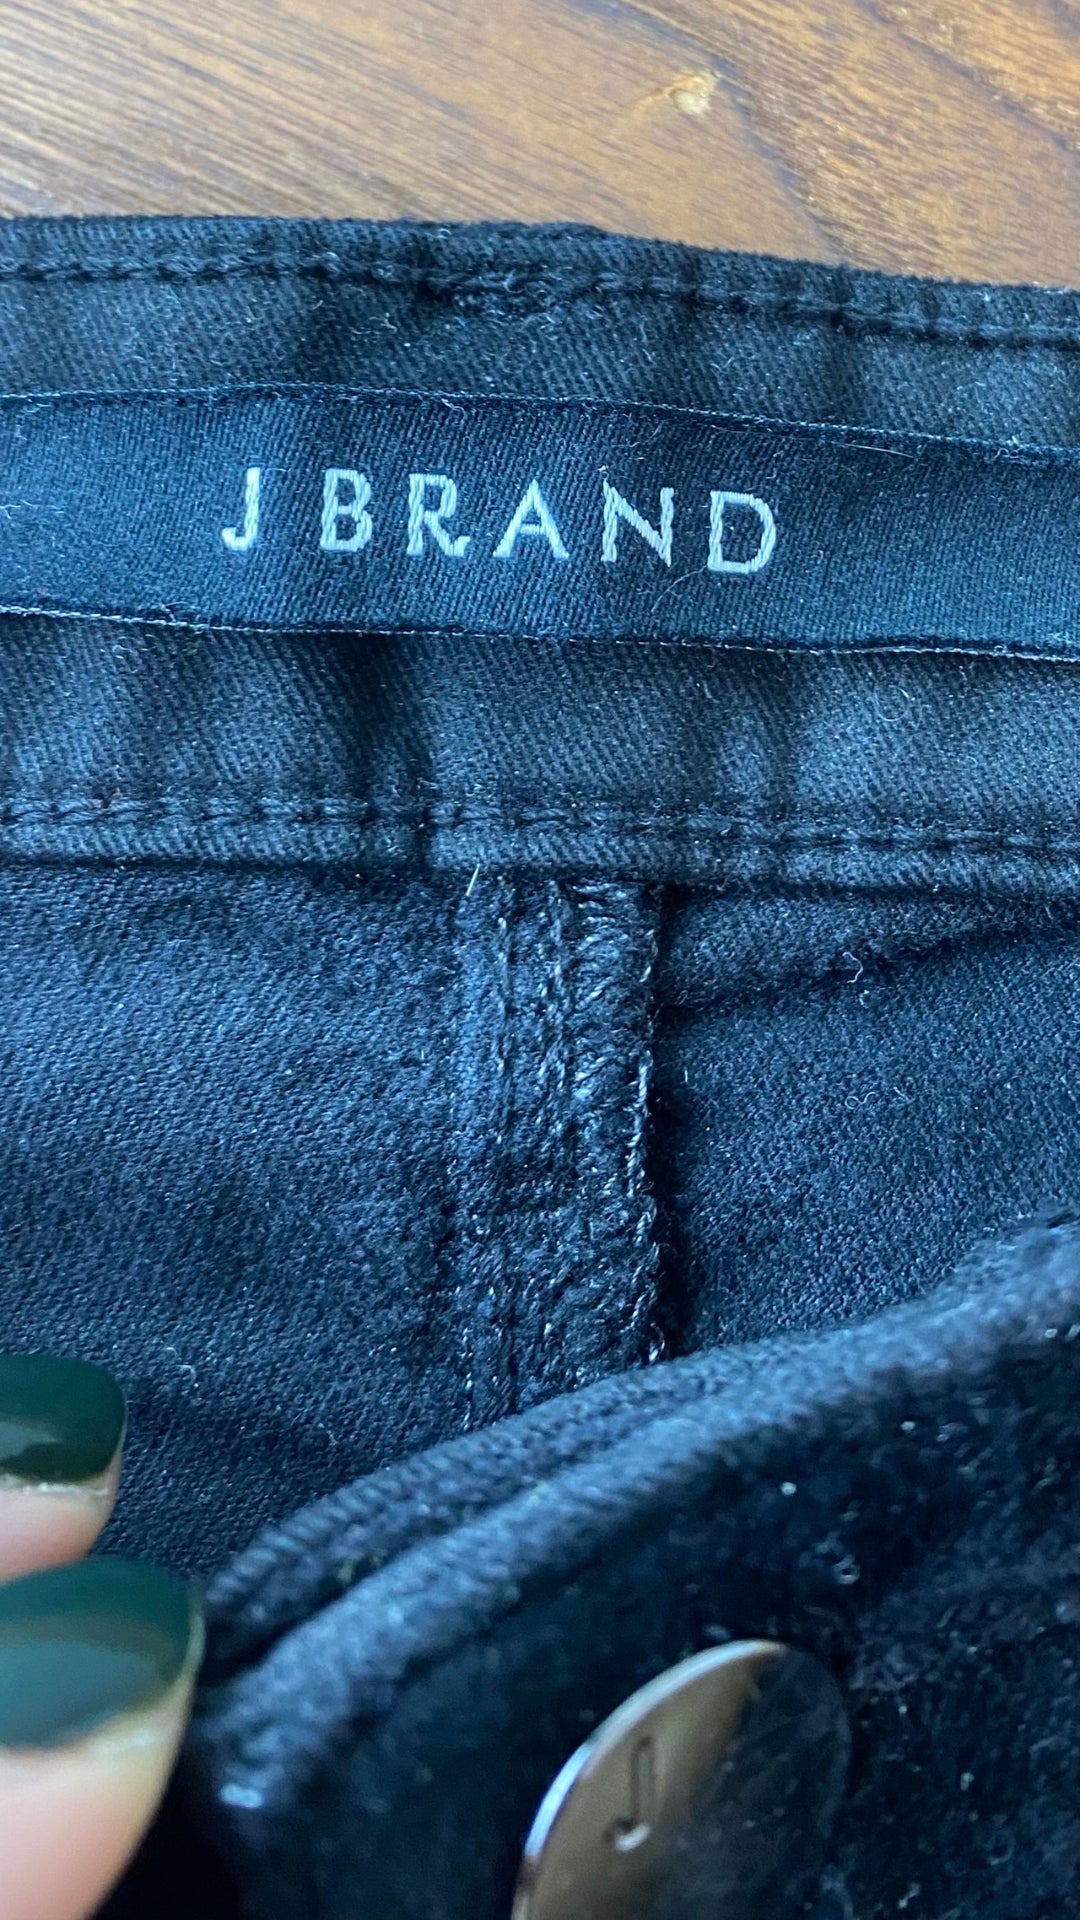 Pantalon velours noir à jambe évasée J Brand, taille 26. Vue de l'étiquette de marque.